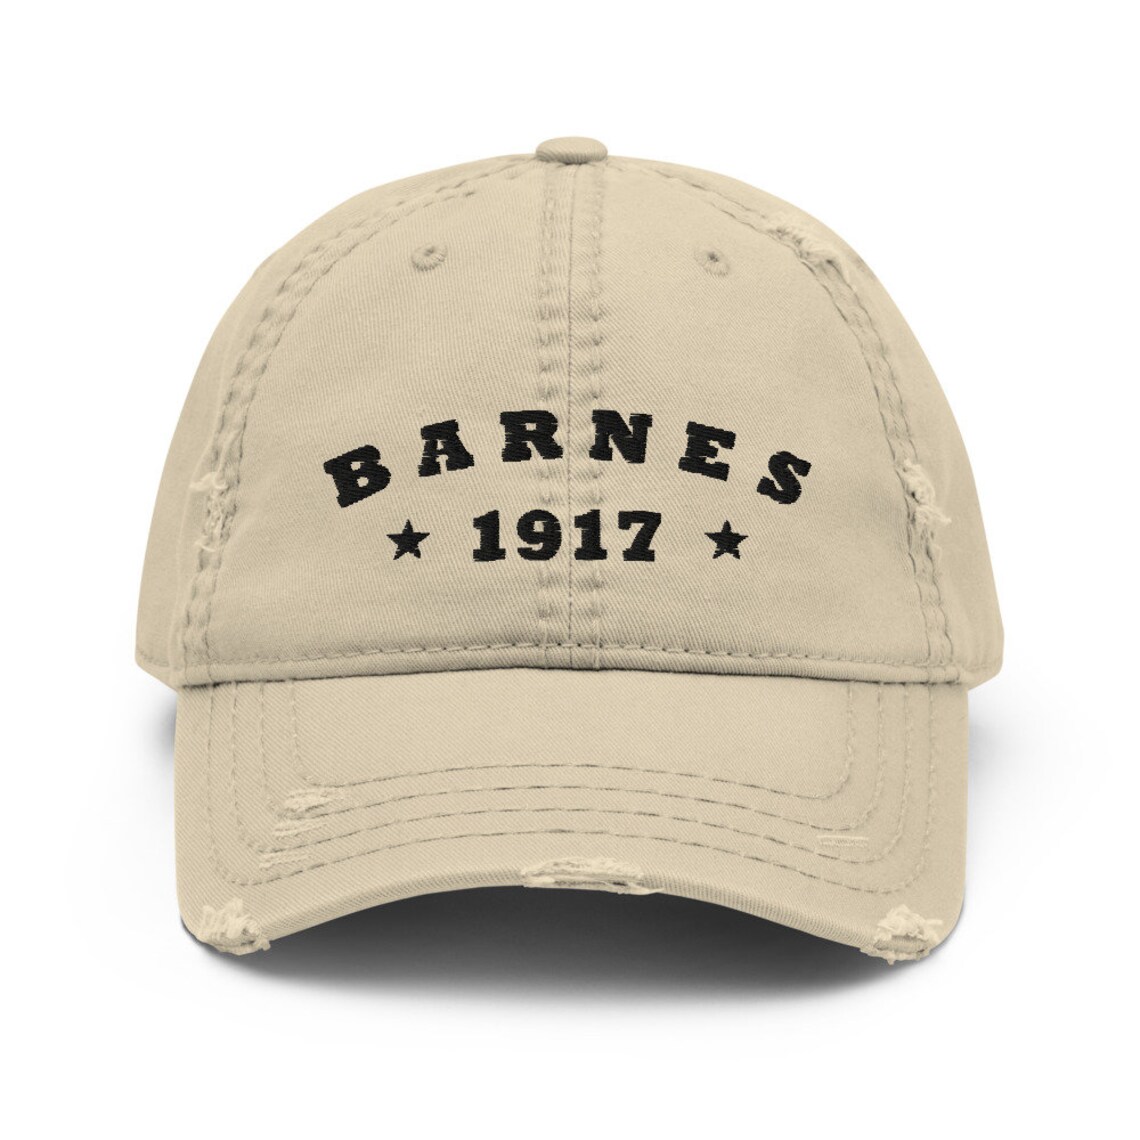 Bucky Barnes 1917 Cap Winter Soldier Distressed Dad Hat. | Etsy